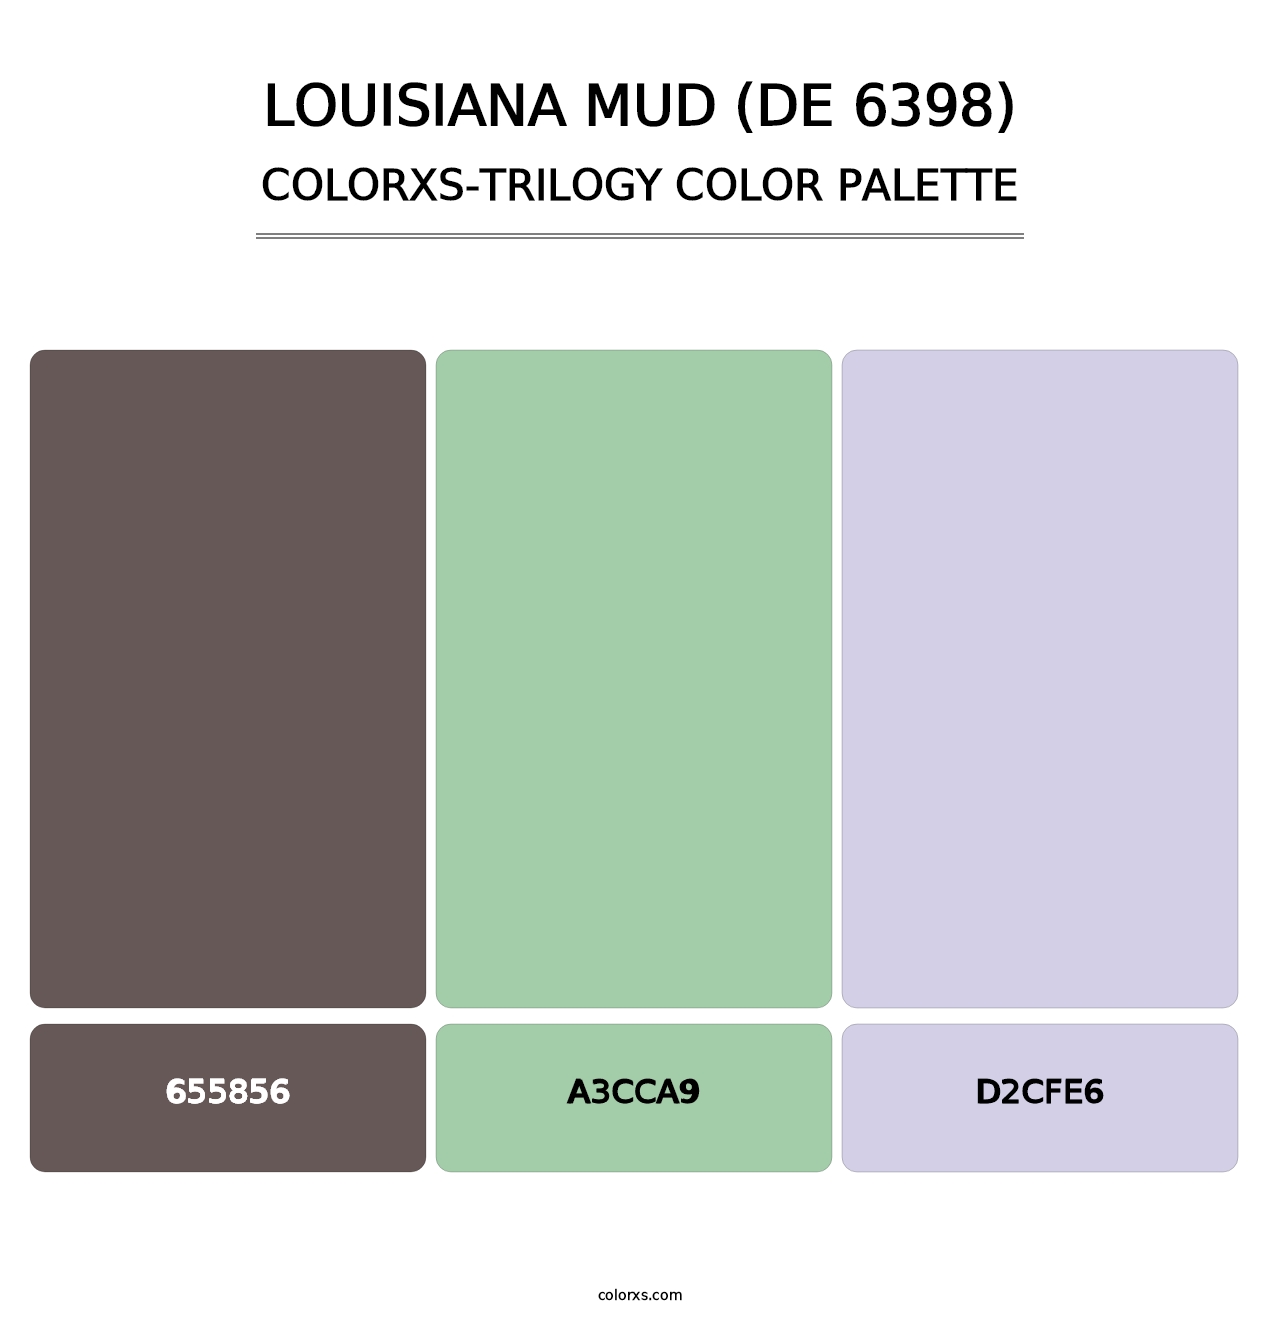 Louisiana Mud (DE 6398) - Colorxs Trilogy Palette